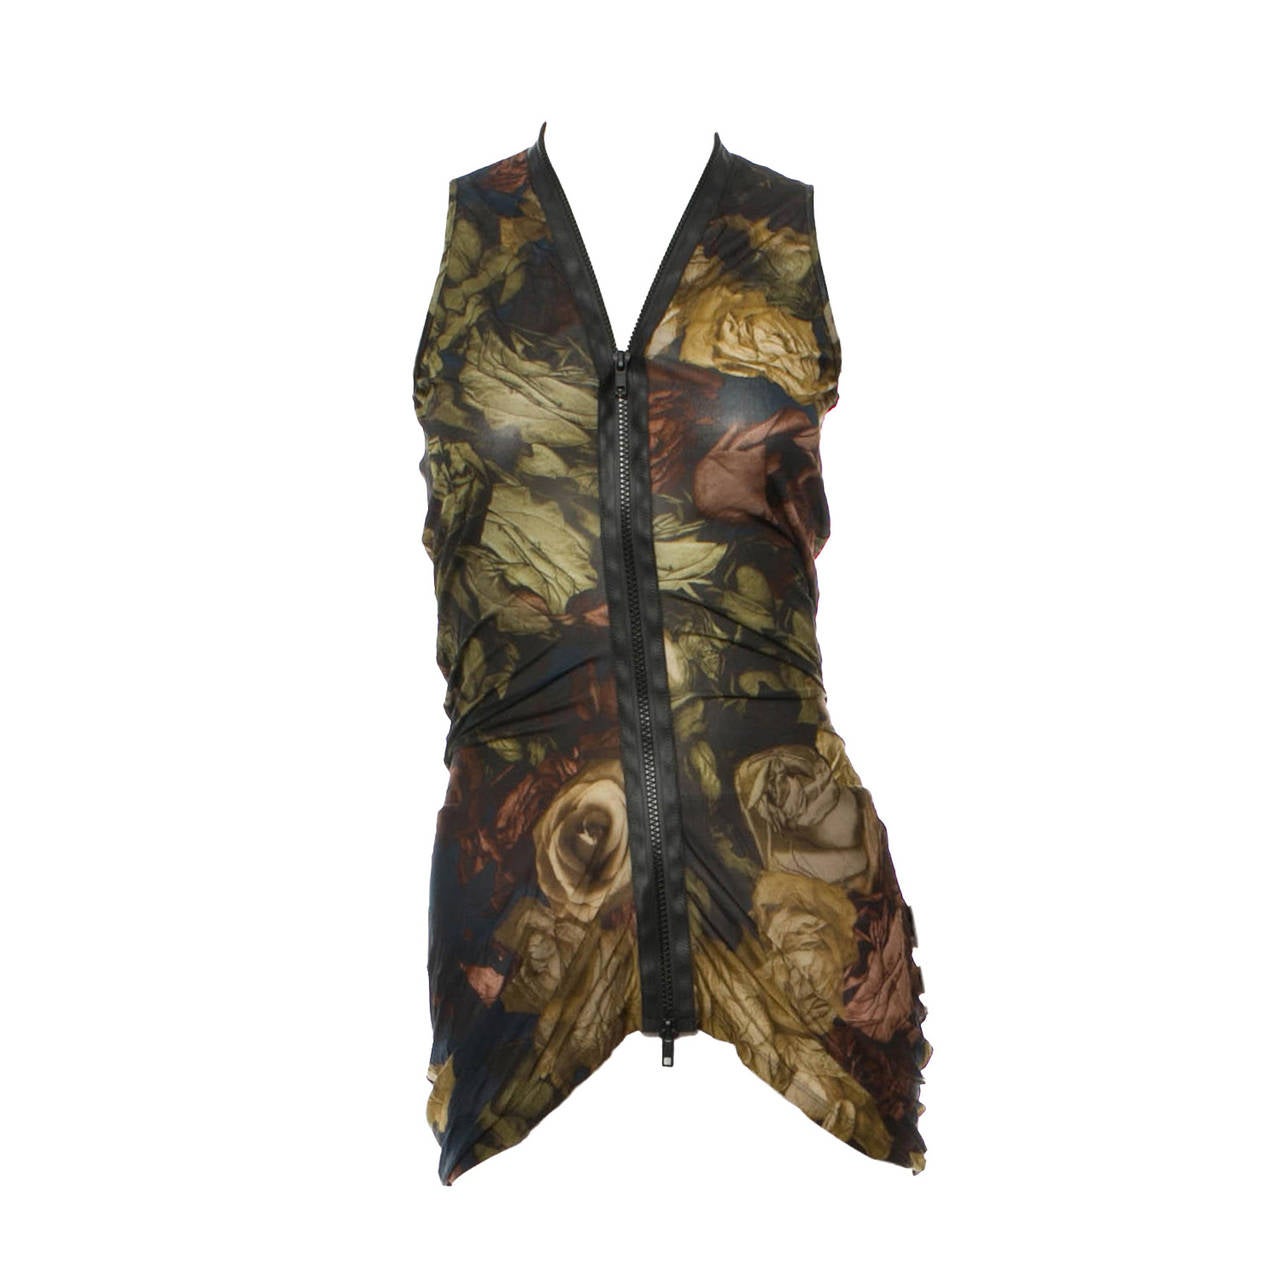 Alexander McQueen Floral Silk Blouse, Plato's Atlantis Collection 2010